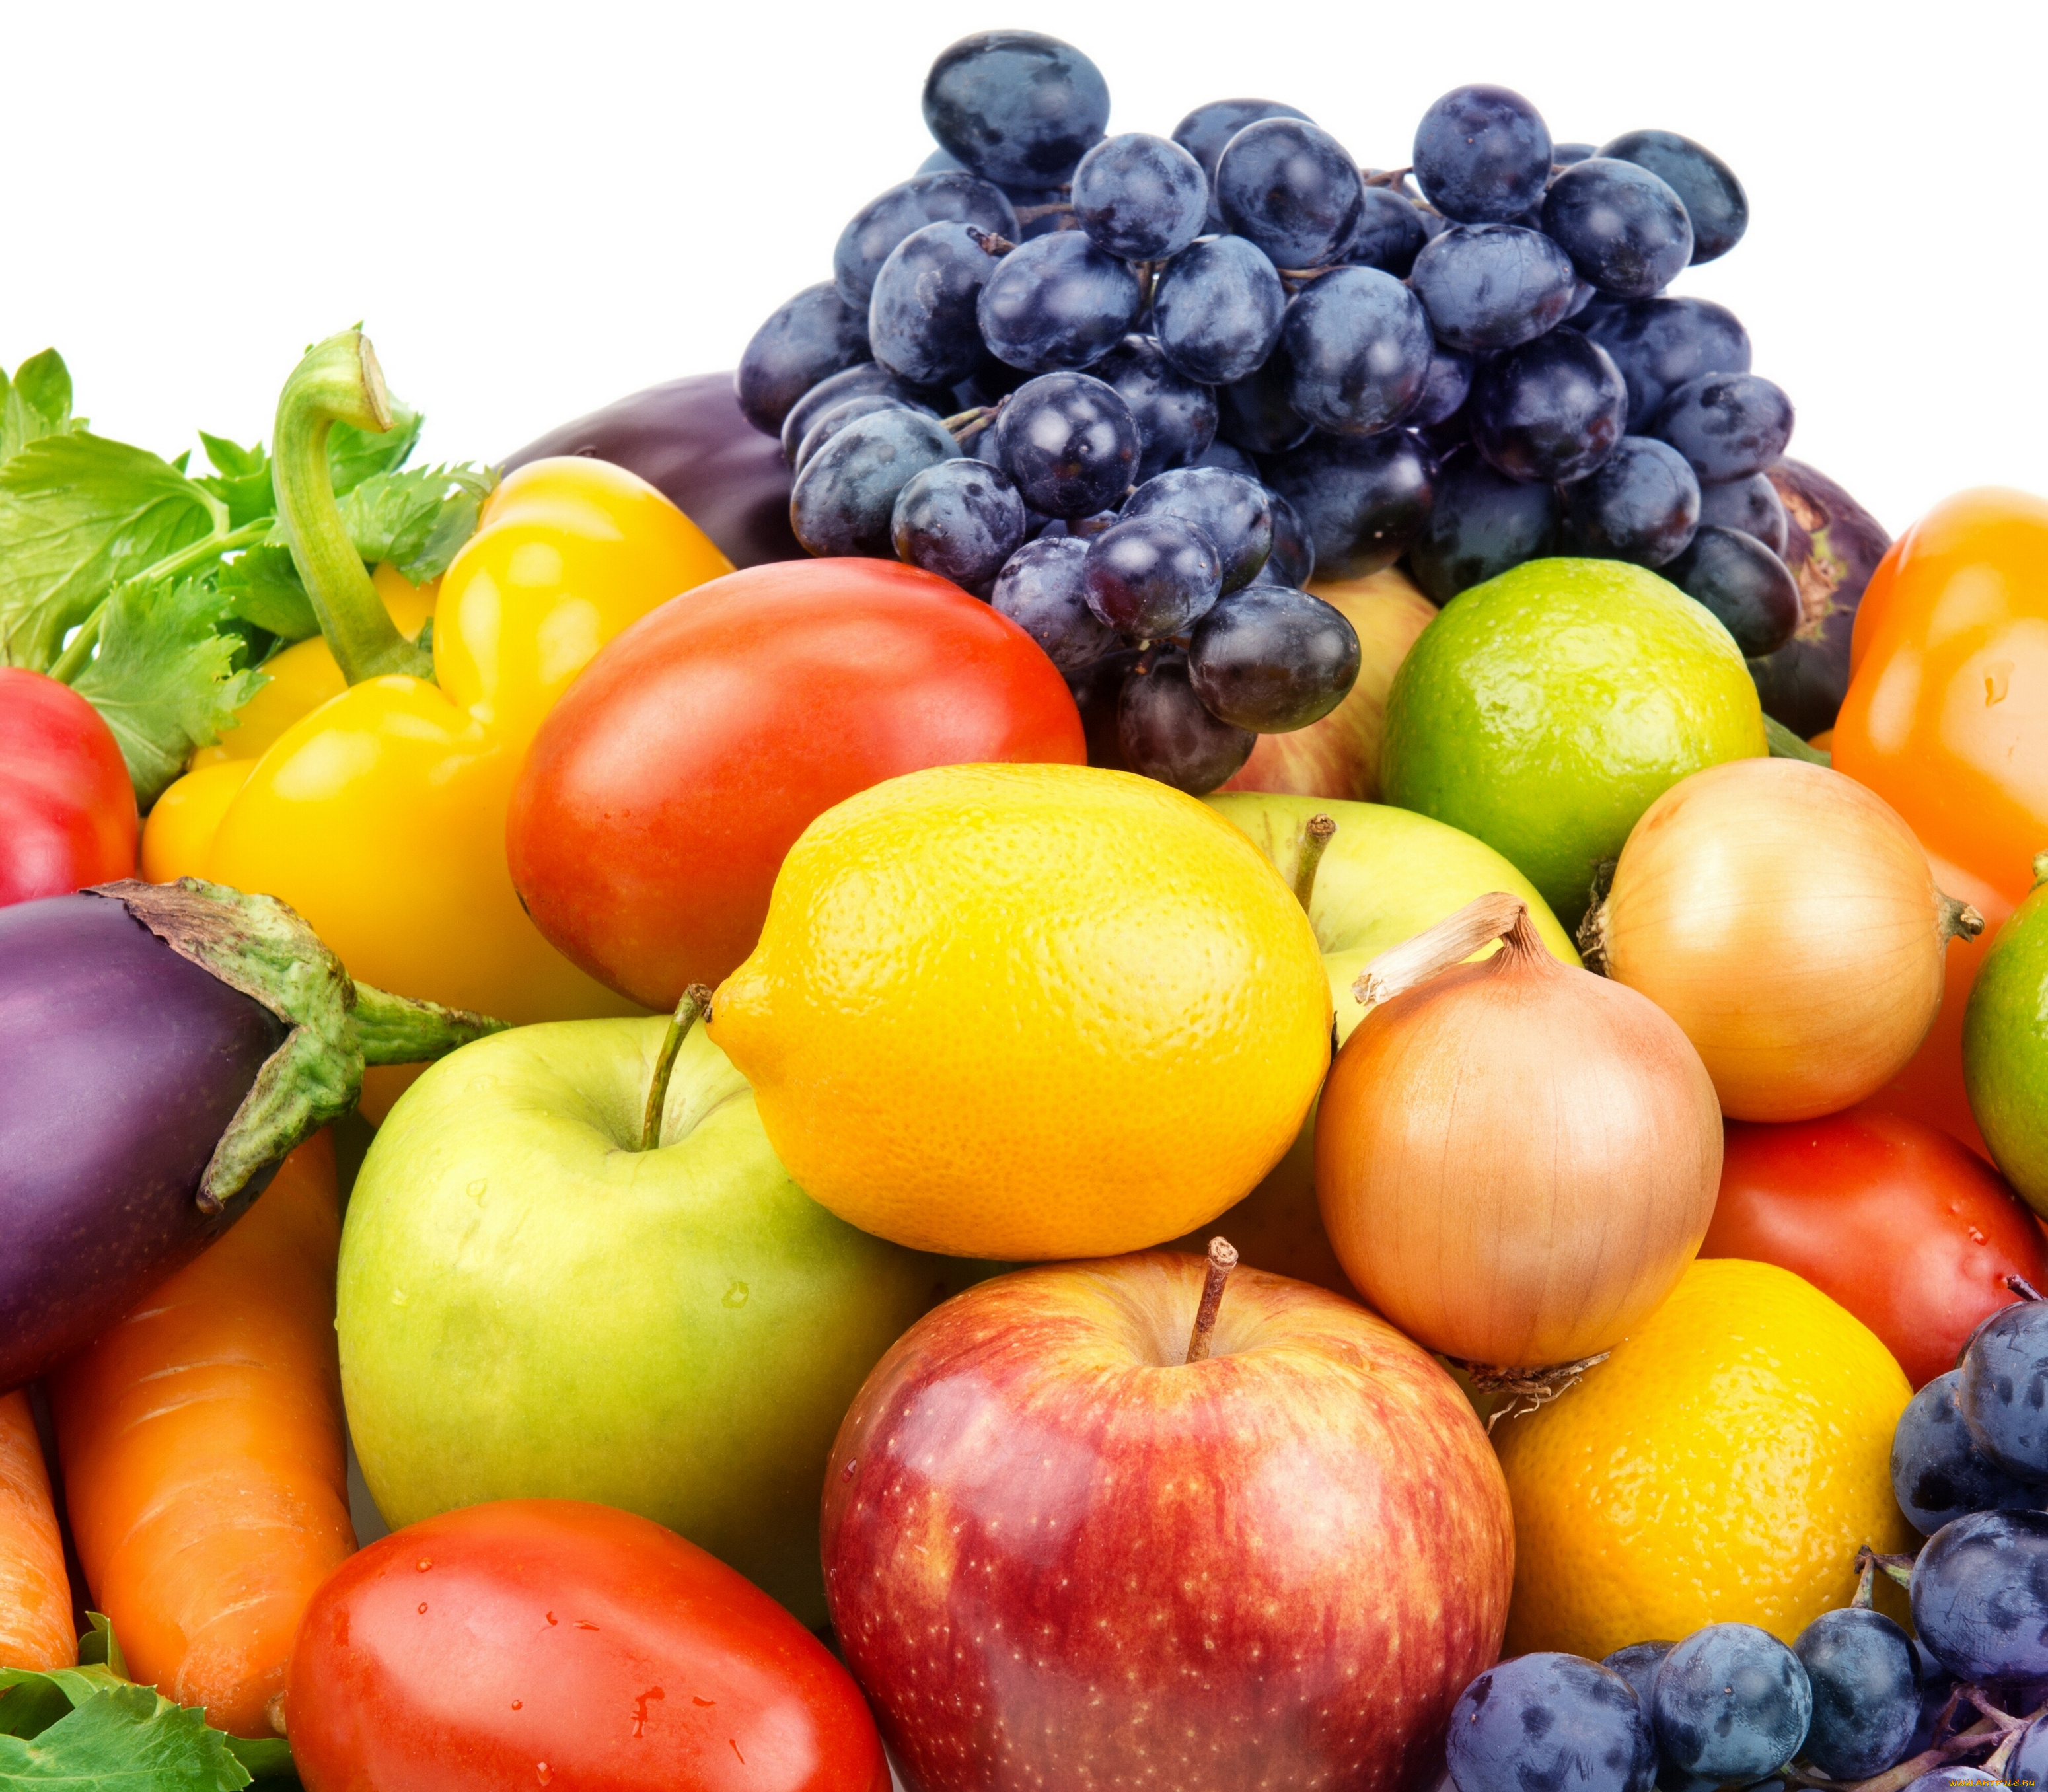 еда, фрукты, и, овощи, вместе, фрукты, помидоры, лук, паприка, виноград, яблоки, овощи, лимоны